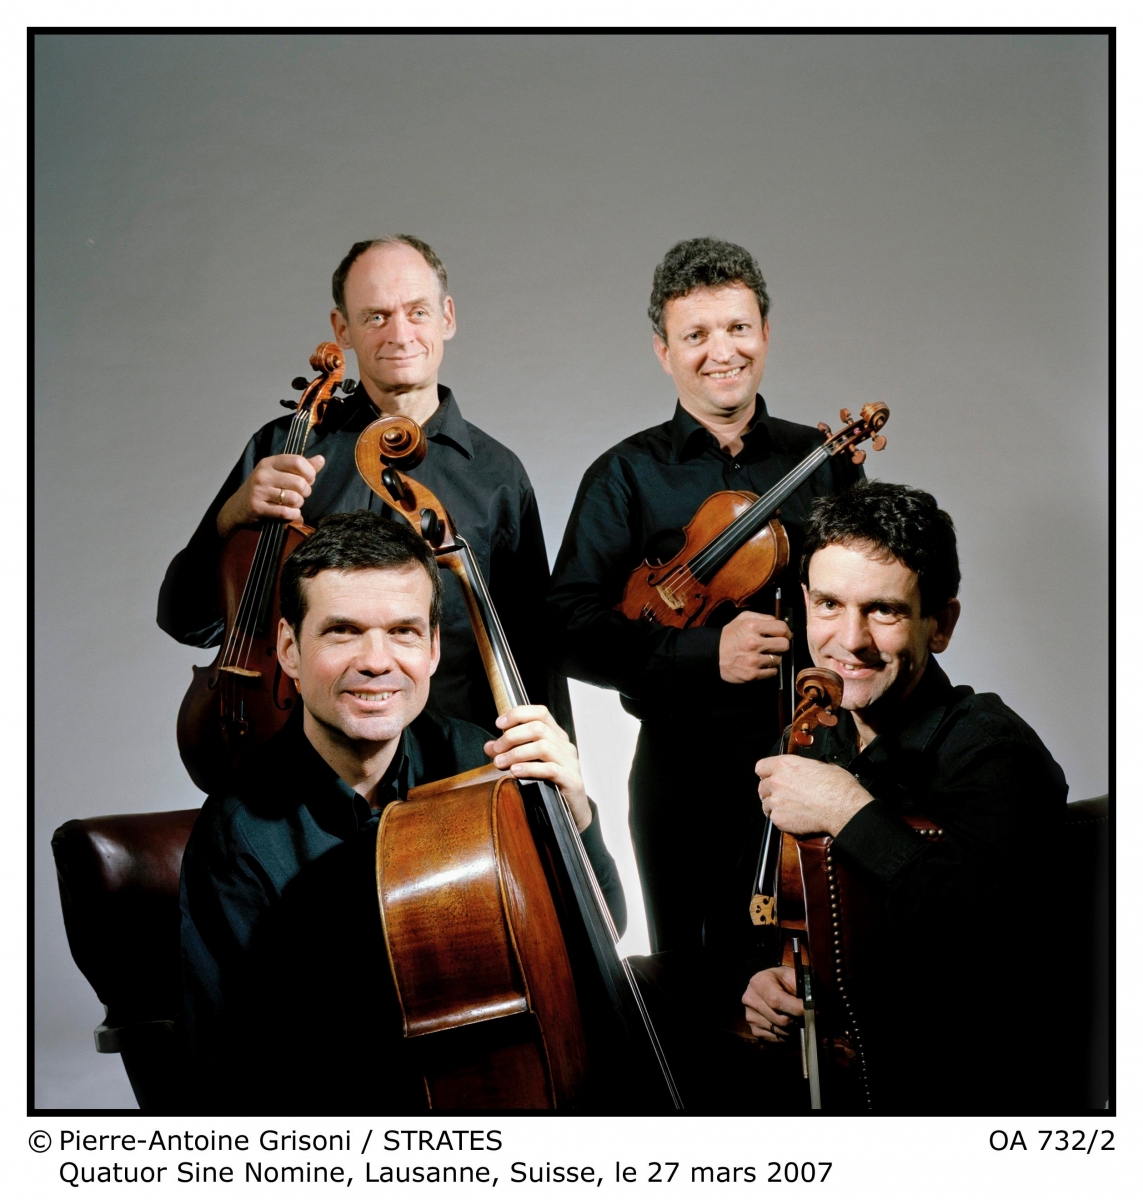 Pierre-Antoine Grisoni / STRATES   OA 732/2 Quatuor Sine Nomine, Lausanne, Suisse, le 27 mars 2007,